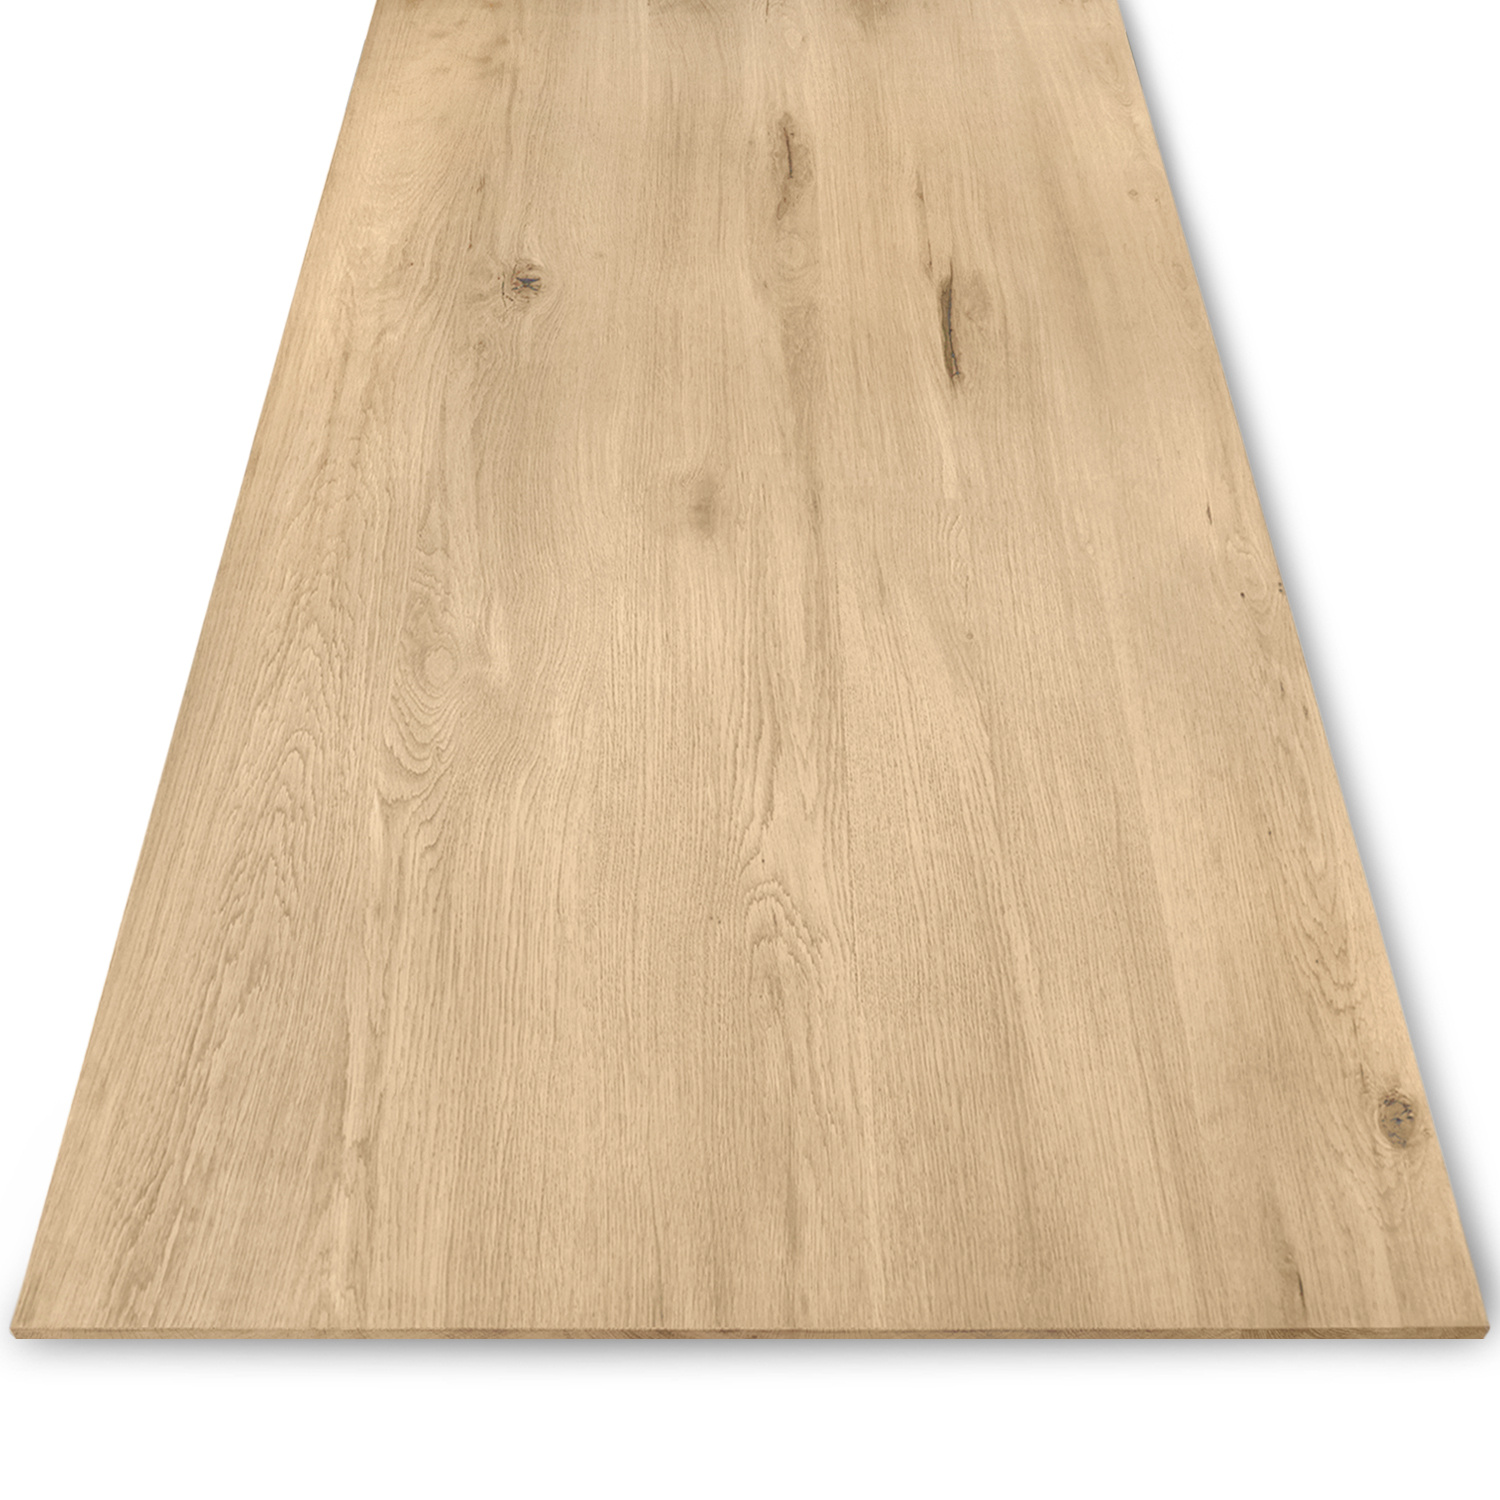  Eiken tafelblad met verjongde rand - 2,5 cm dik (1-laag) - Diverse afmetingen - extra rustiek Europees eikenhout - met extra brede lamellen (circa 14-20 cm) - verlijmd kd 8-12%